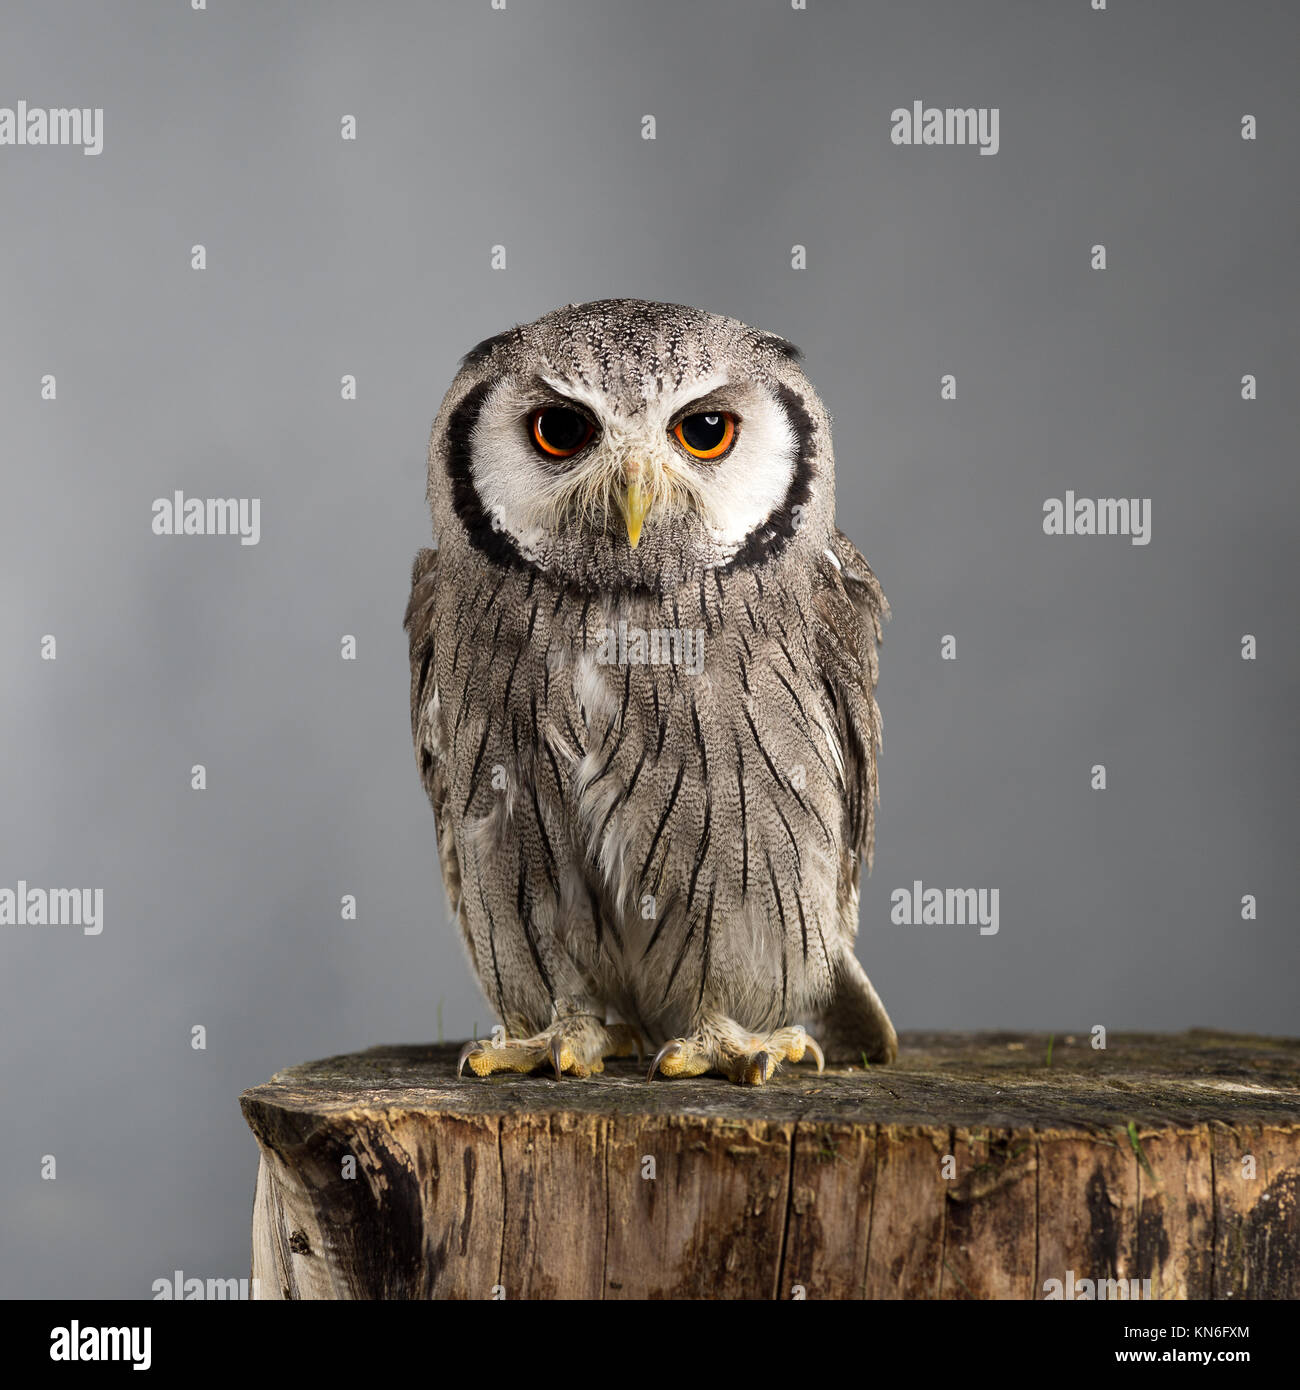 Northern white-faced owl Ptilopsis leucotis studio portrait with grey background Stock Photo